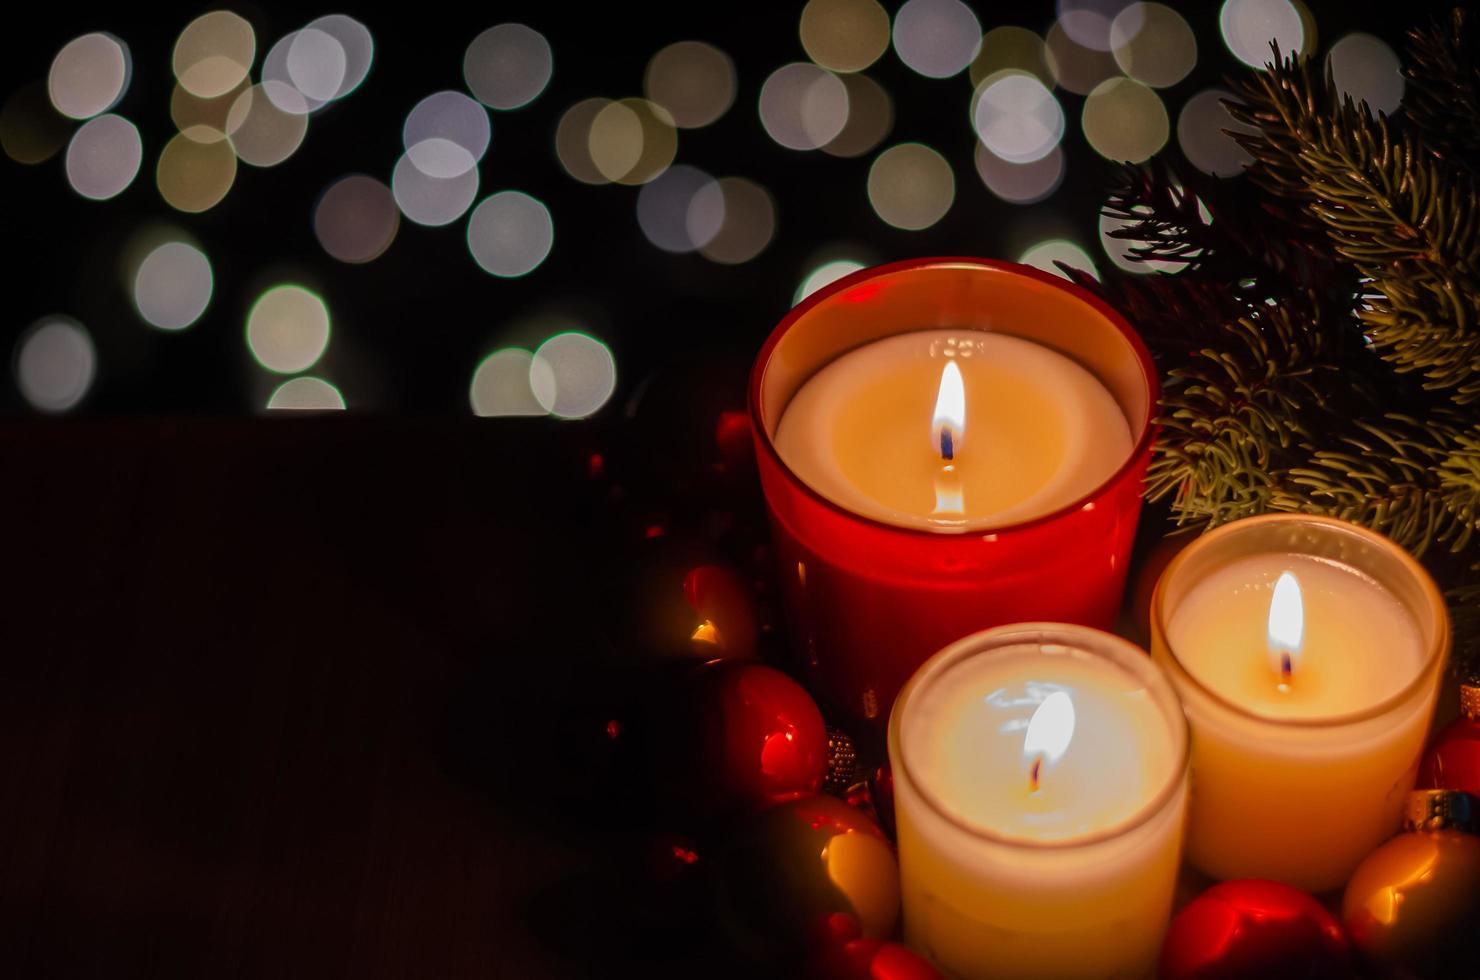 fokus och suddig av brinnande ljus med jul träd och struntsak ornament på bokeh ljus och mörk bakgrund. foto